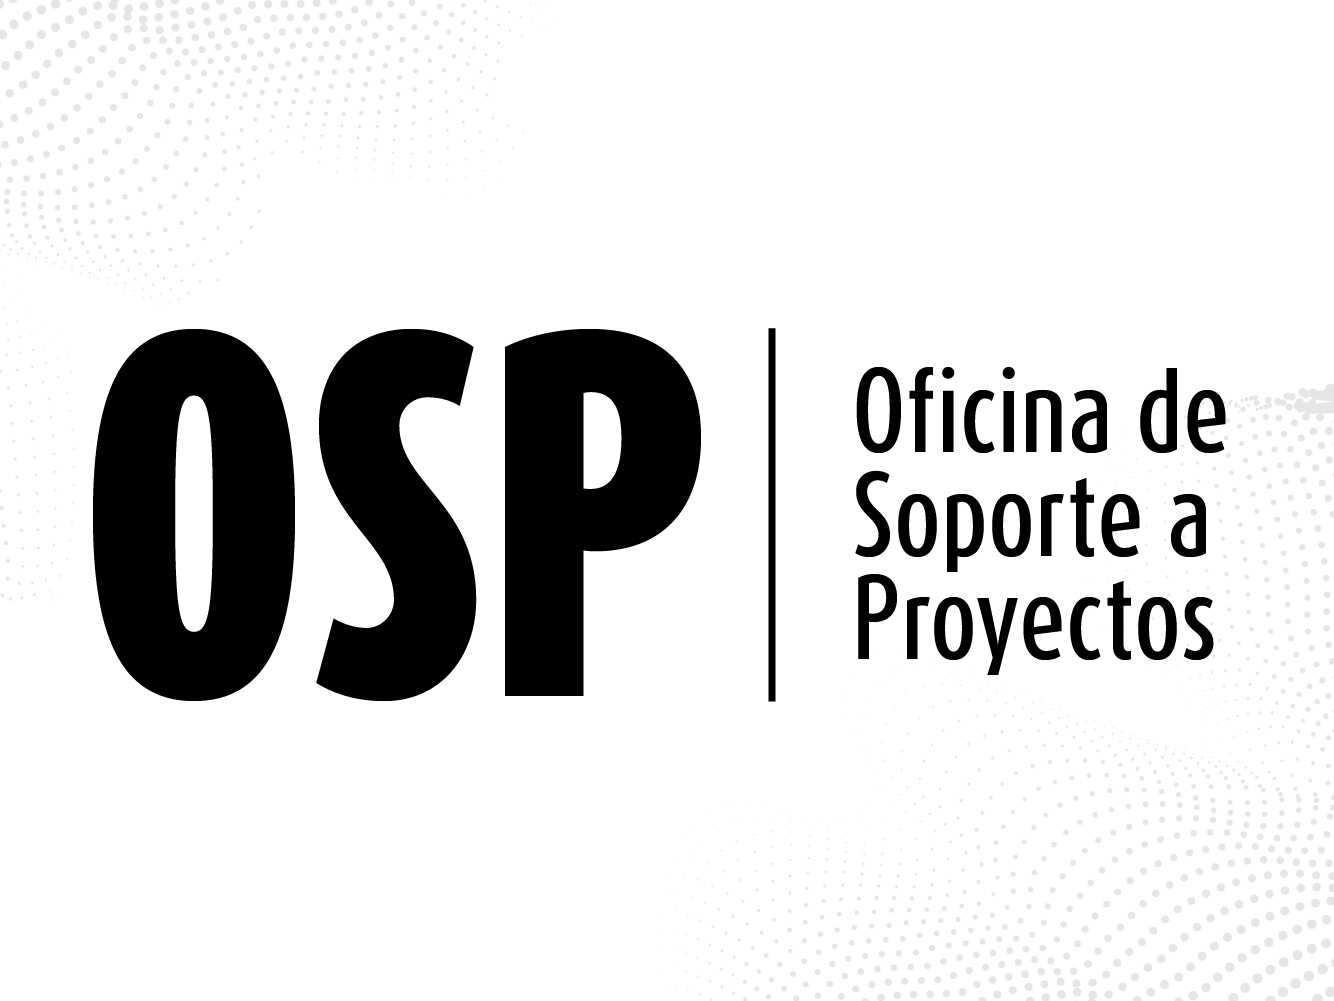 Oficina de Soporte a Proyectos OSP | Facultad de Ingeniería de la Universidad de los Andes